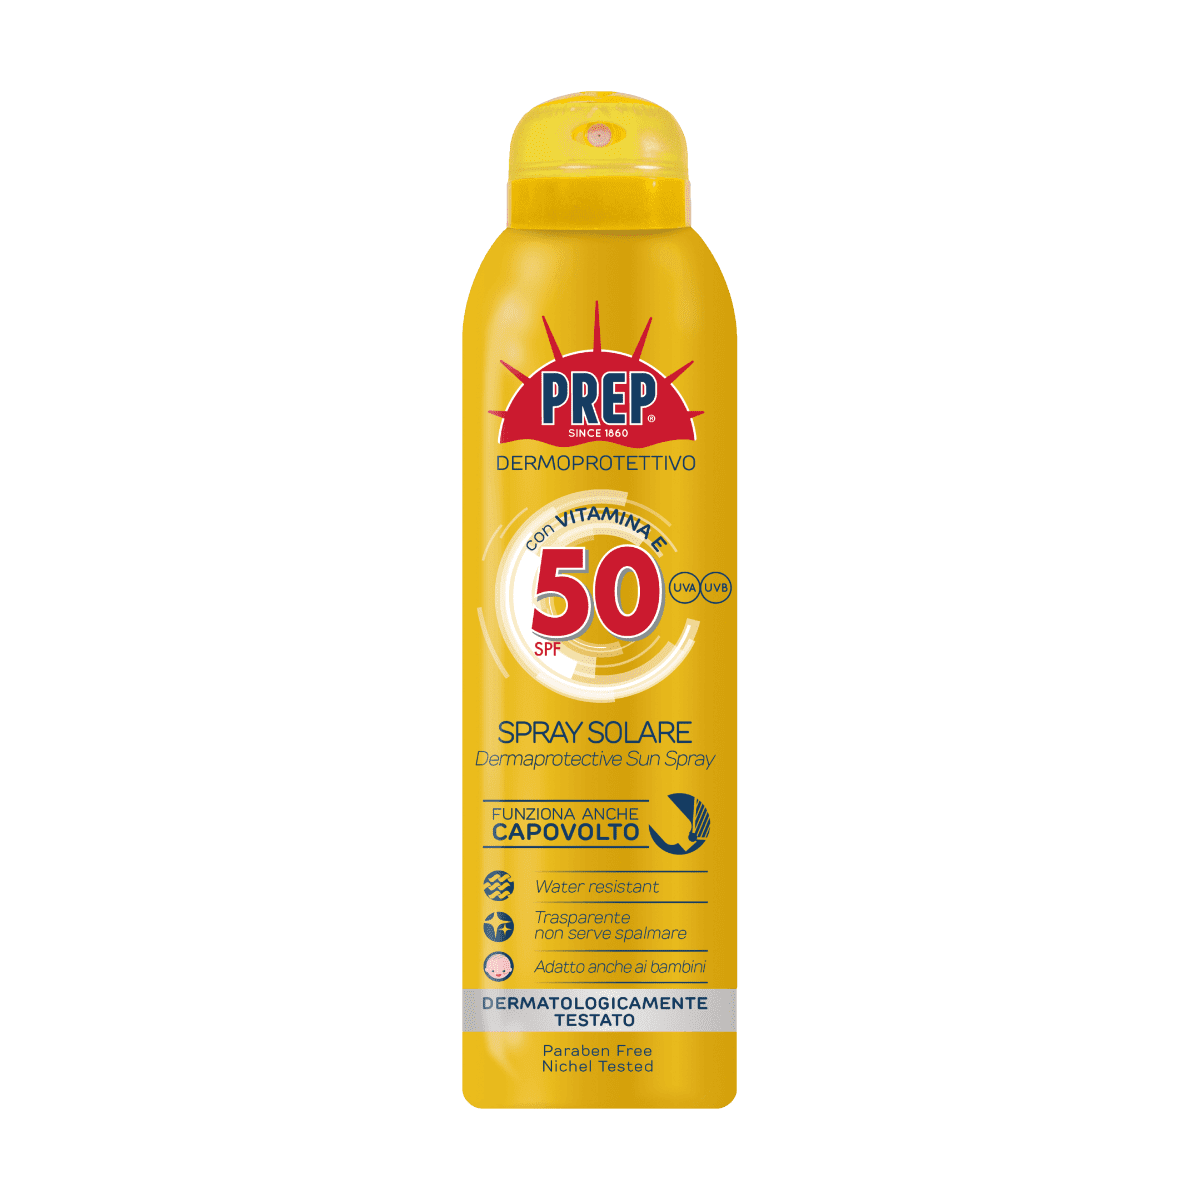 PREP Derma Protective Sun Spray SPF 50 - ochranný sprej na opalování, 150 ml